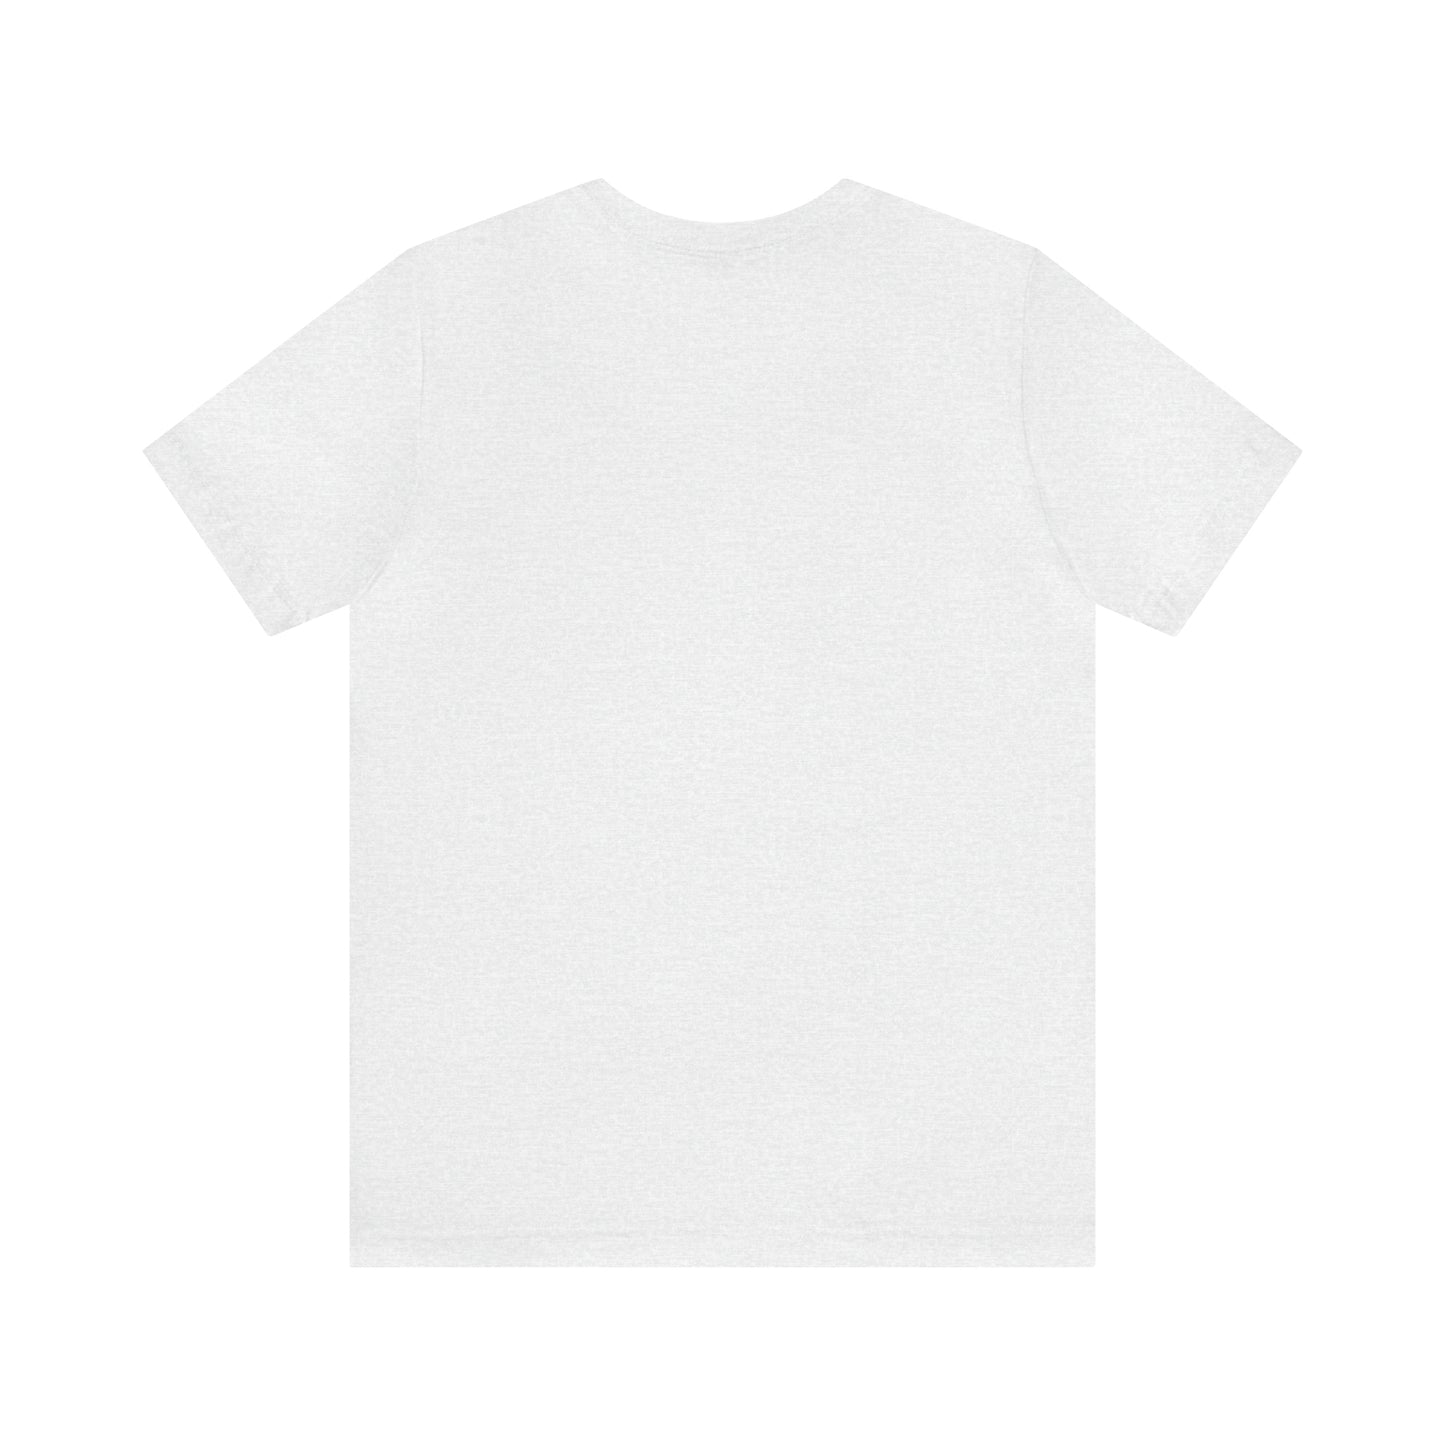 Raynham, Mass Pickleball Short Sleeve T-Shirt